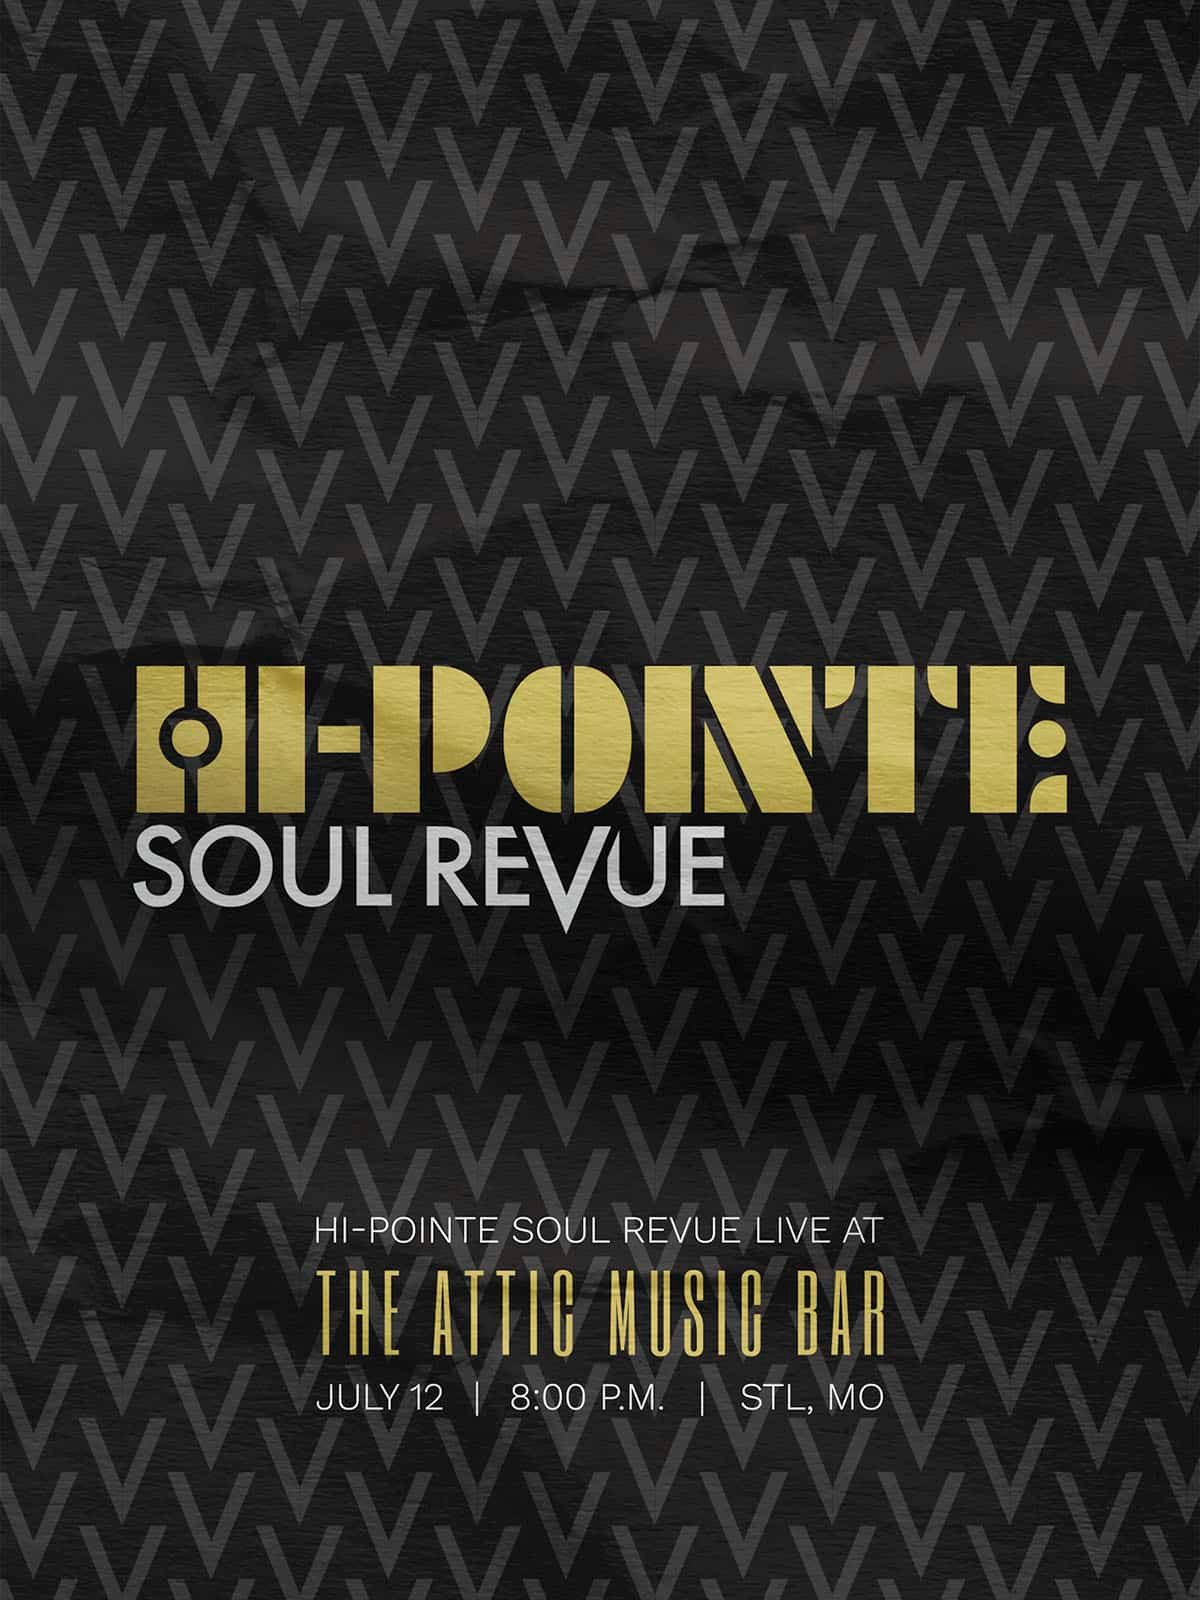 Hi-Pointe Soul Revue poster.